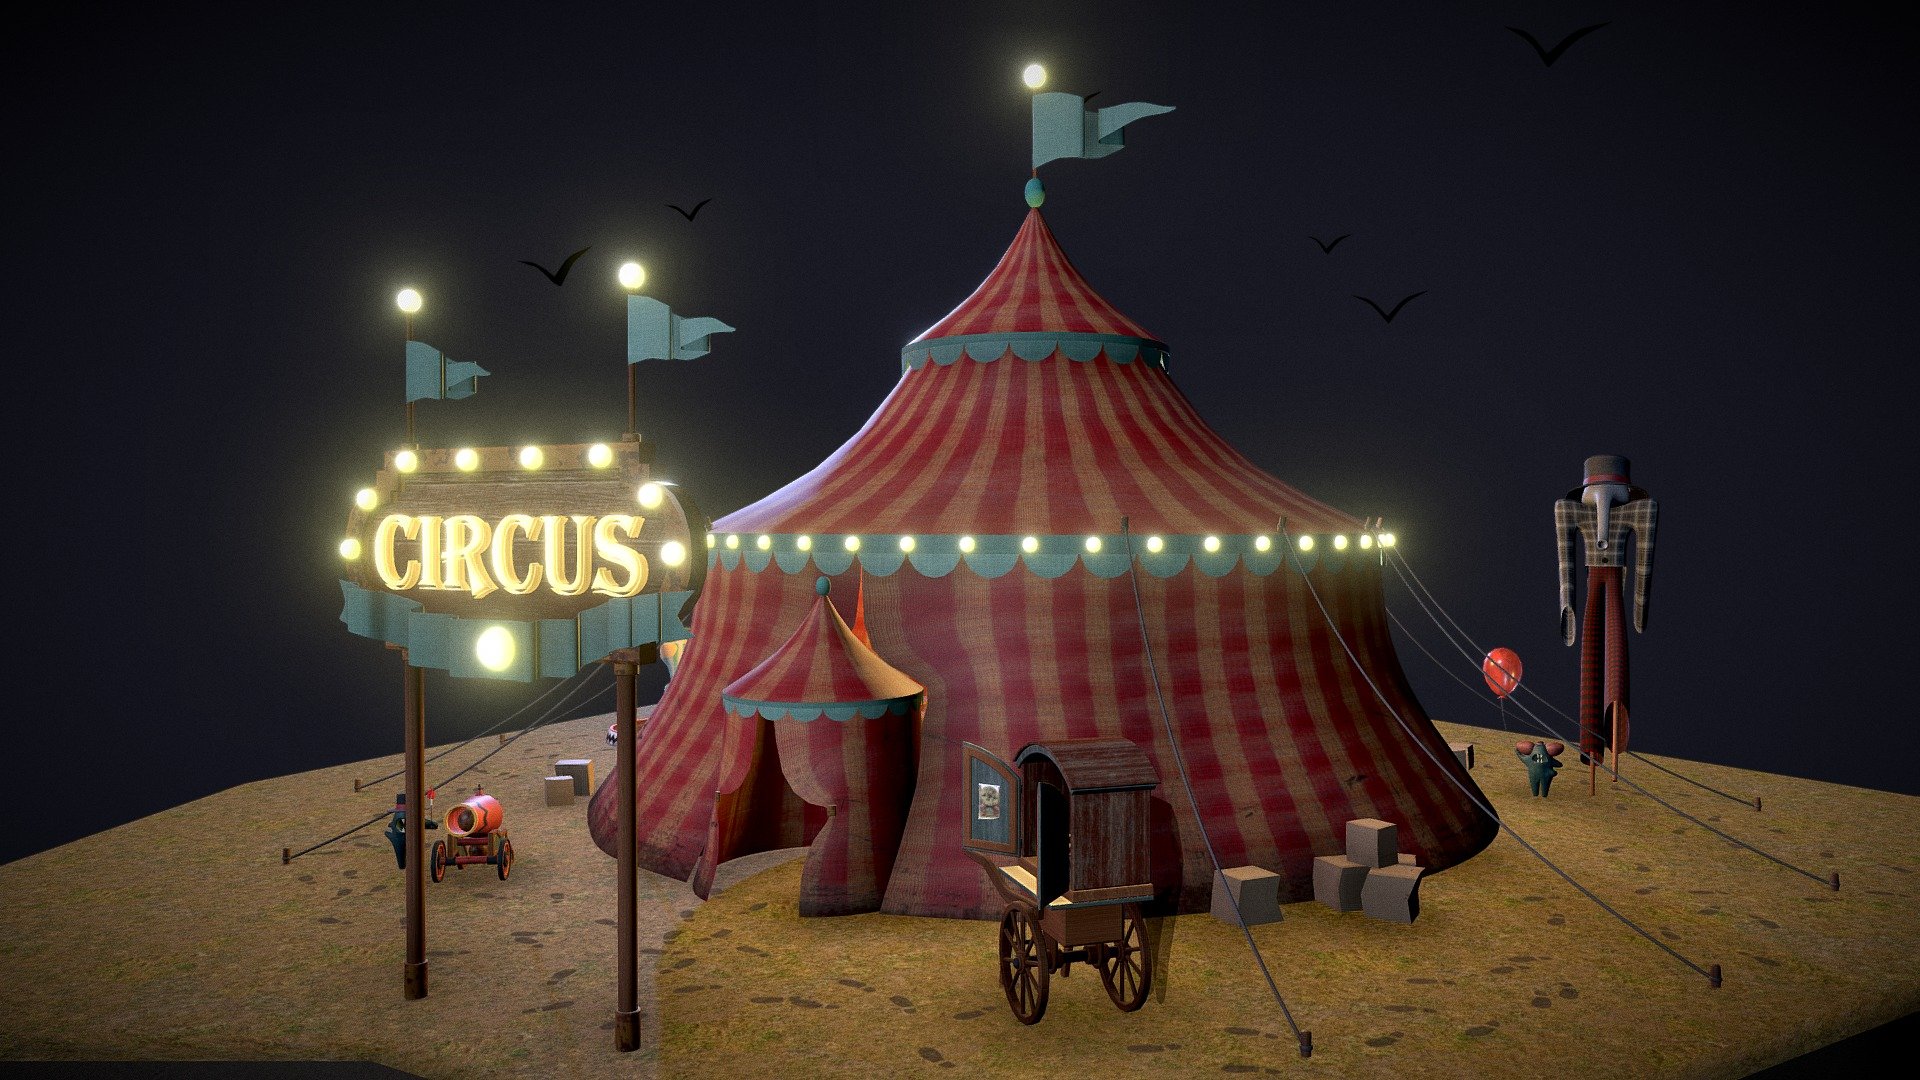 Horror Circus Tents D Model Mail Napmexico Com Mx